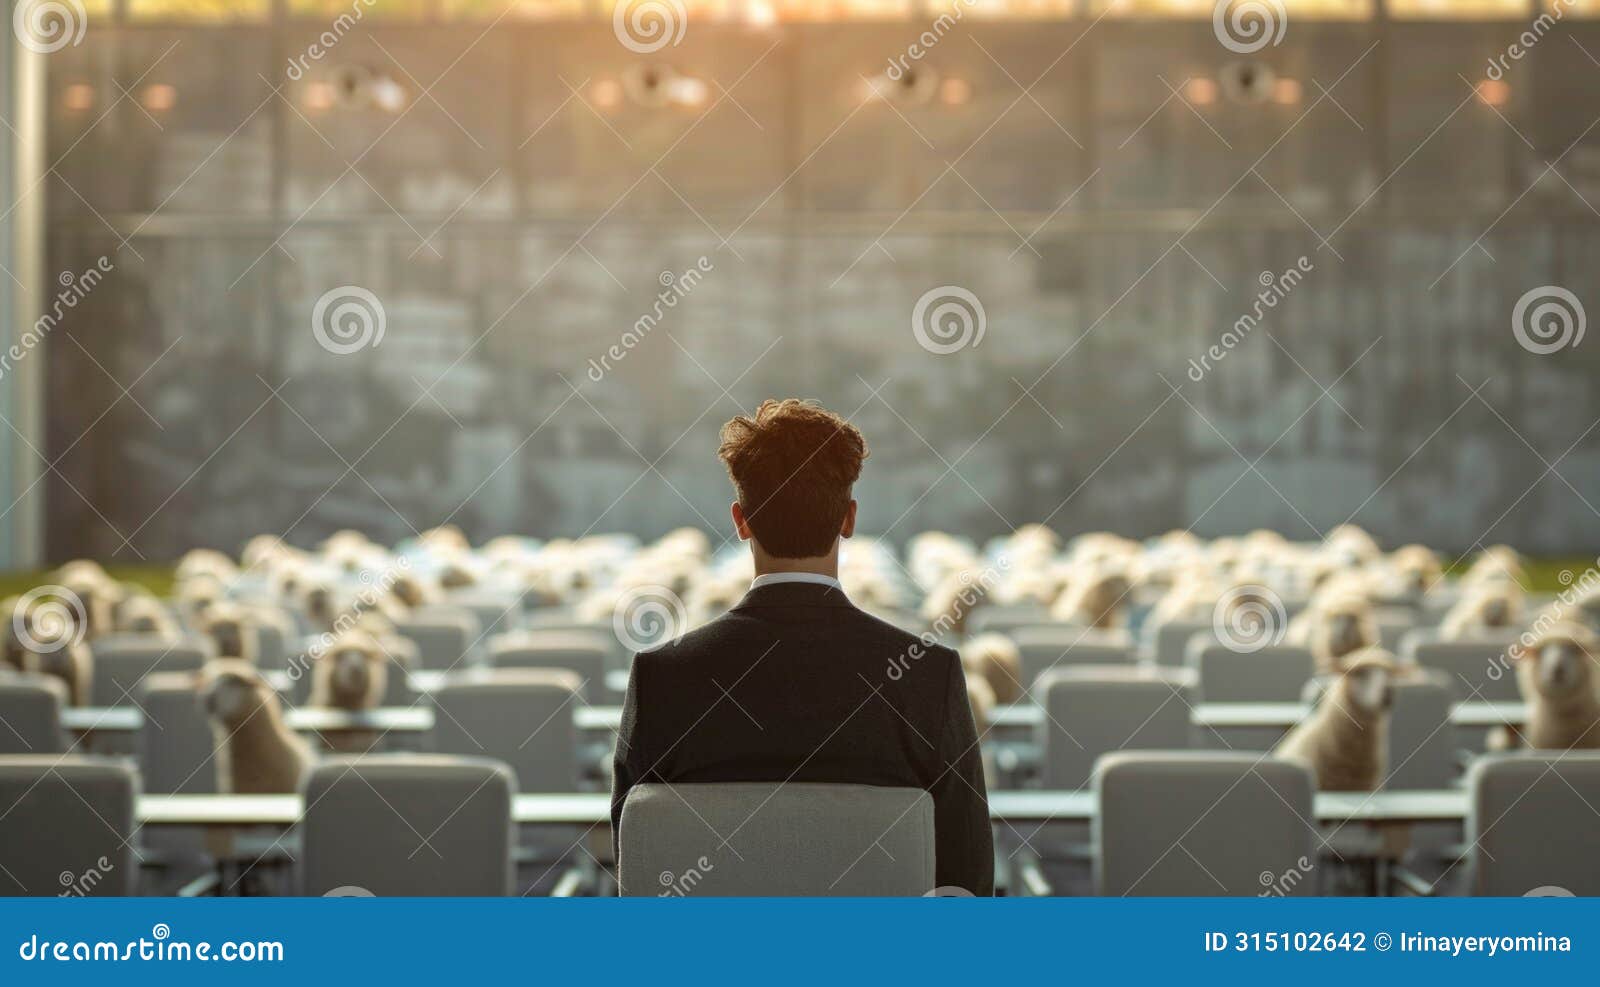 man facing sheep crowd in auditorium: populism metaphor